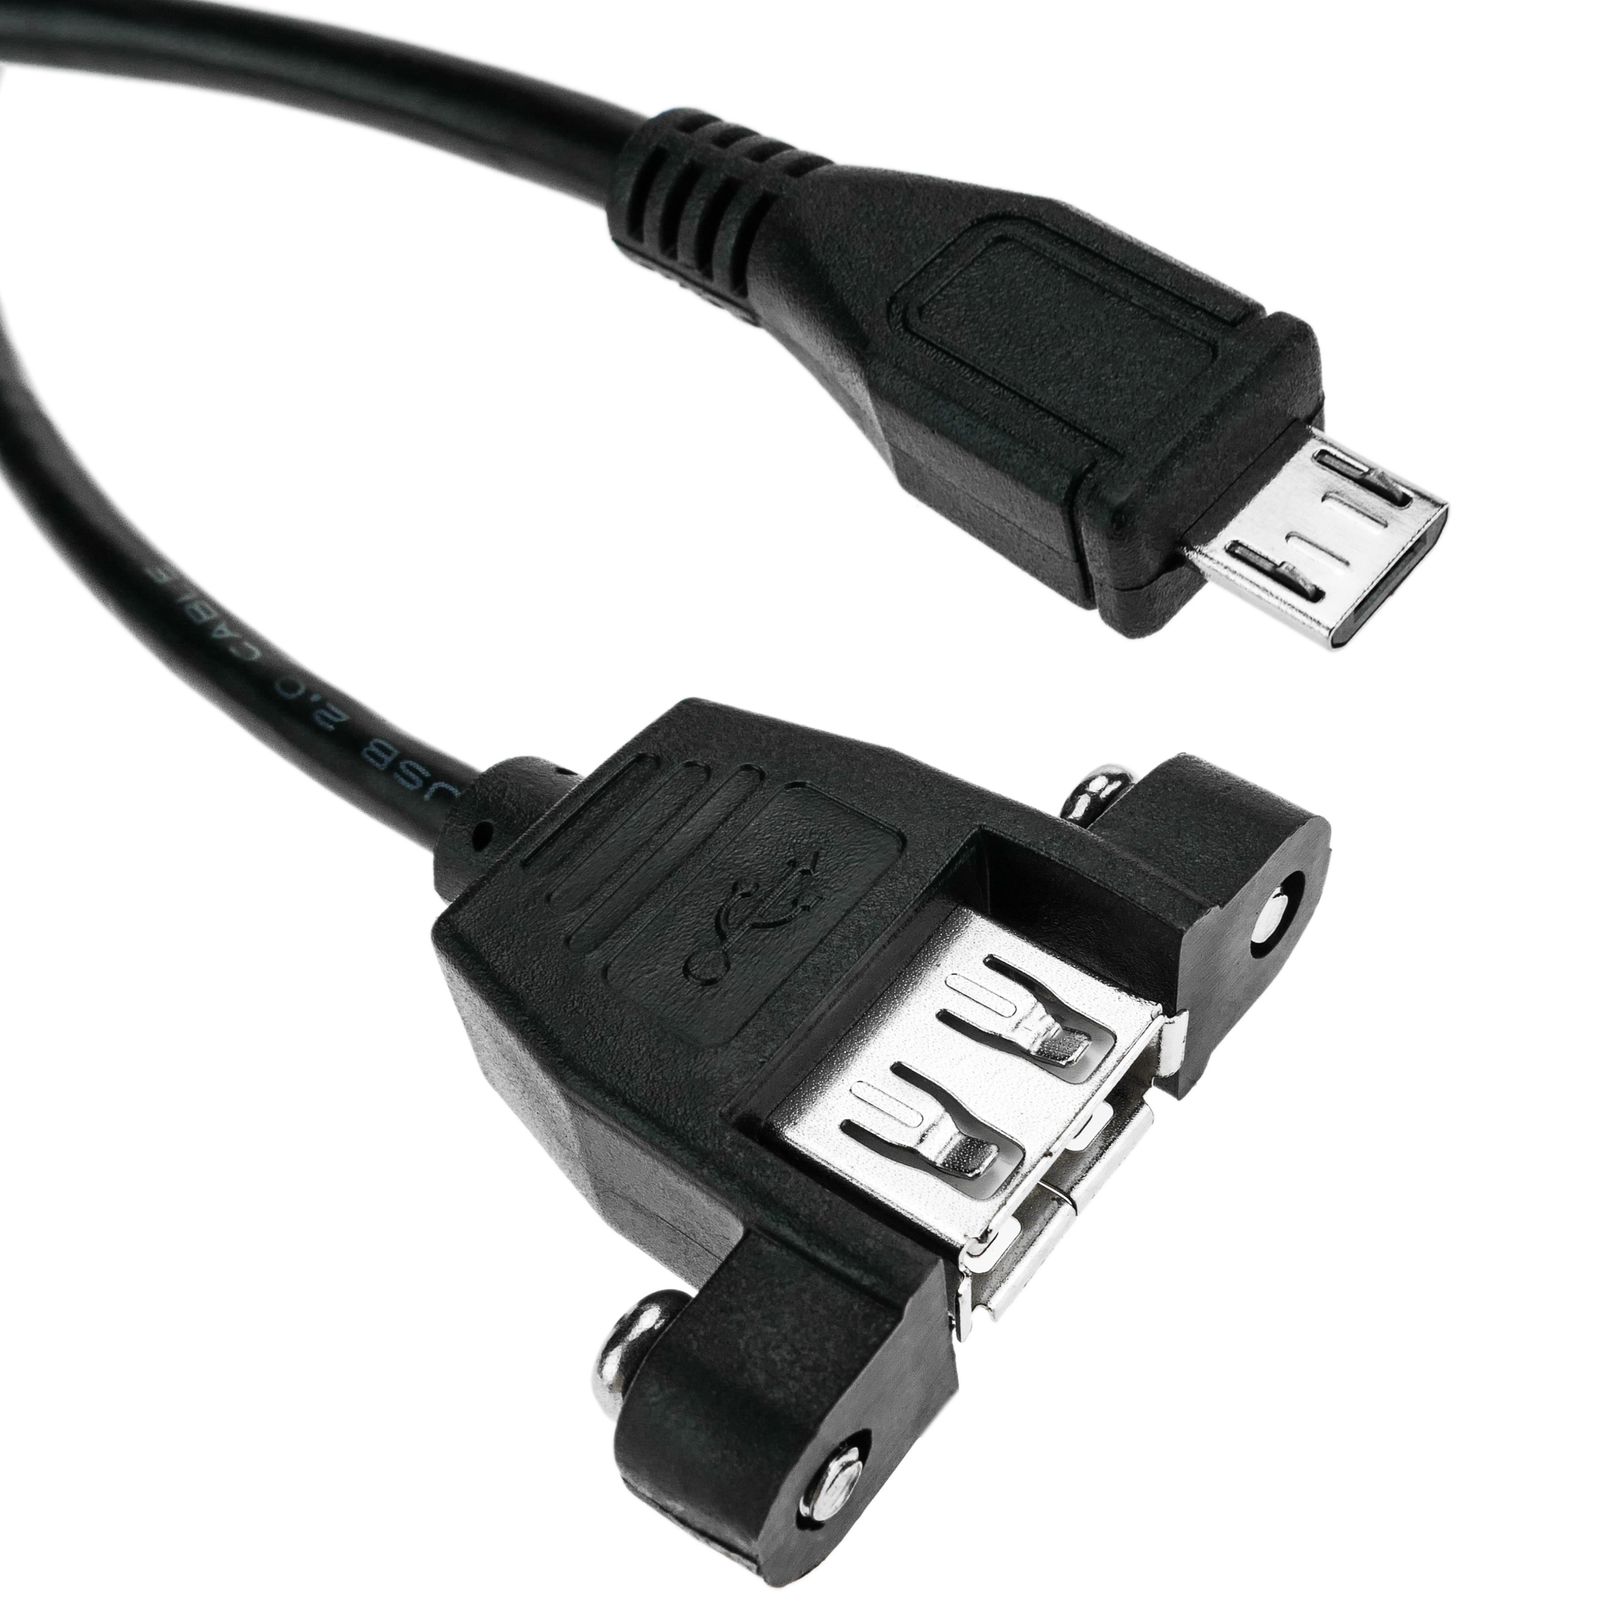 Cable 12cm Micro USB a USB A Hembra OTG - Adaptadores USB (USB 2.0)